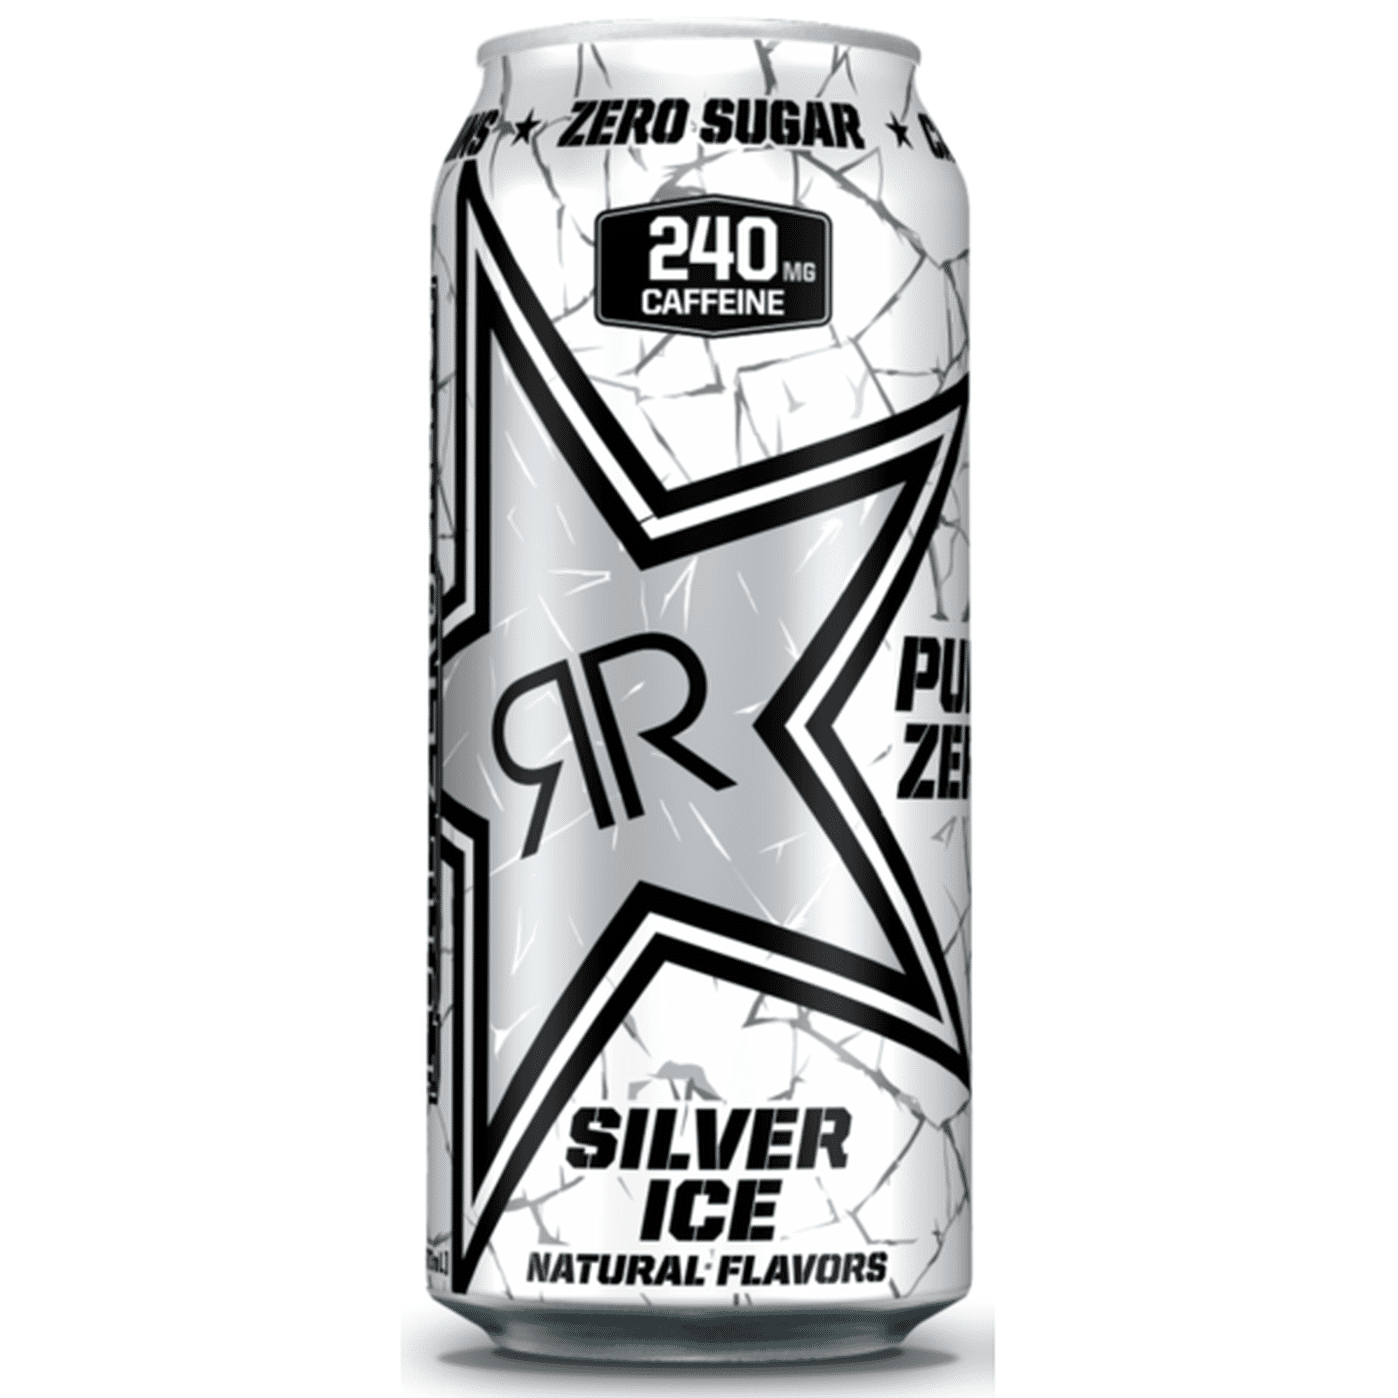 rockstar silver ice pure zero health